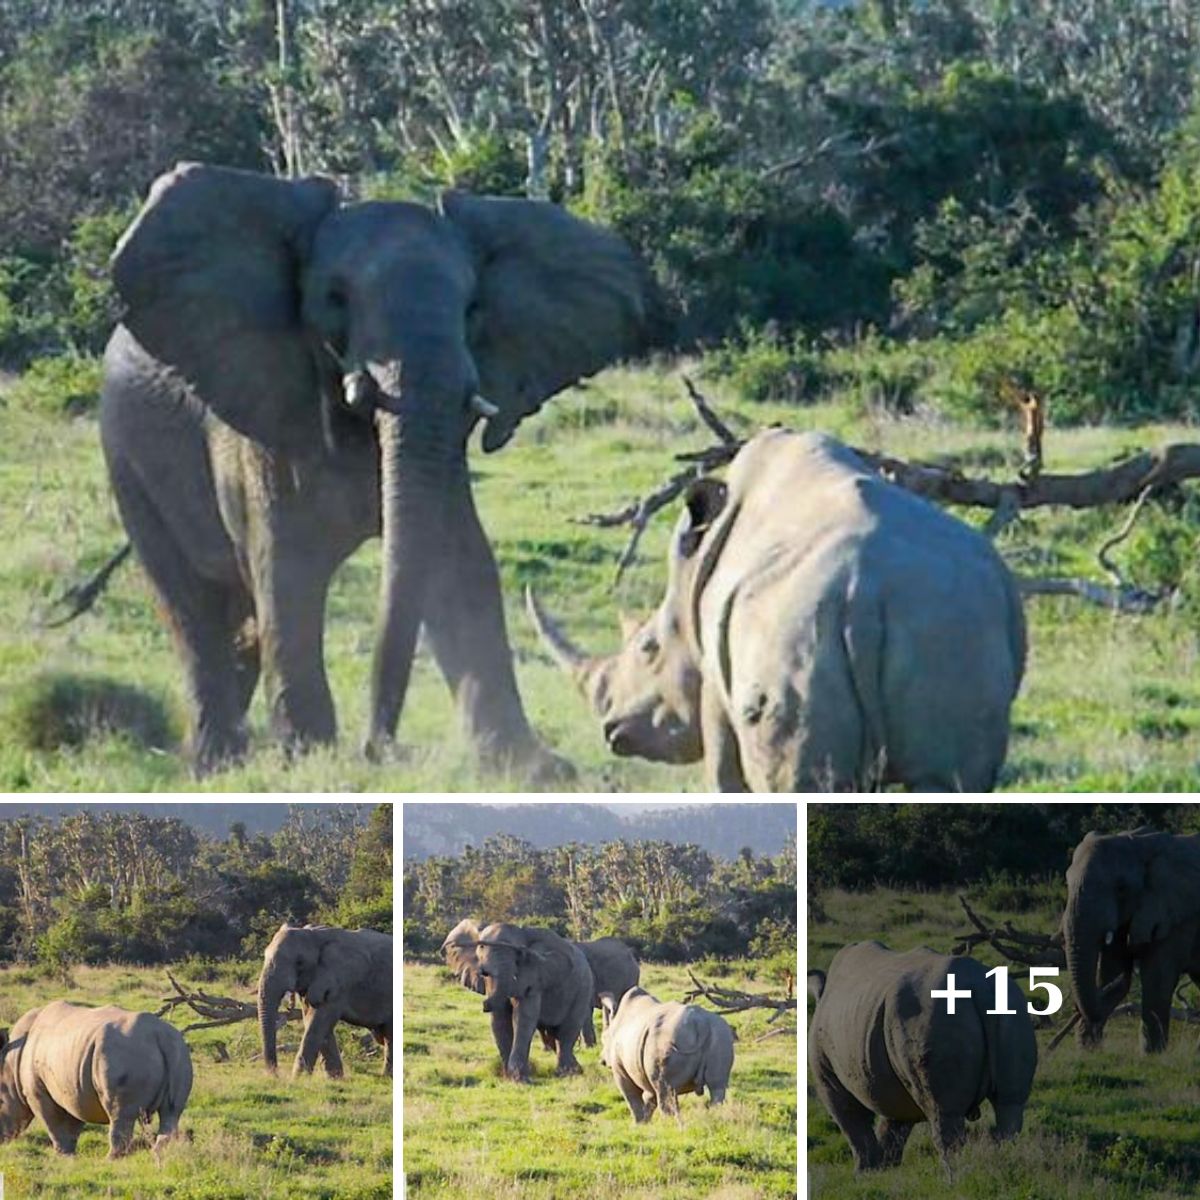 Rhino Chaгges Elephant, Elephant Thгows Stick!